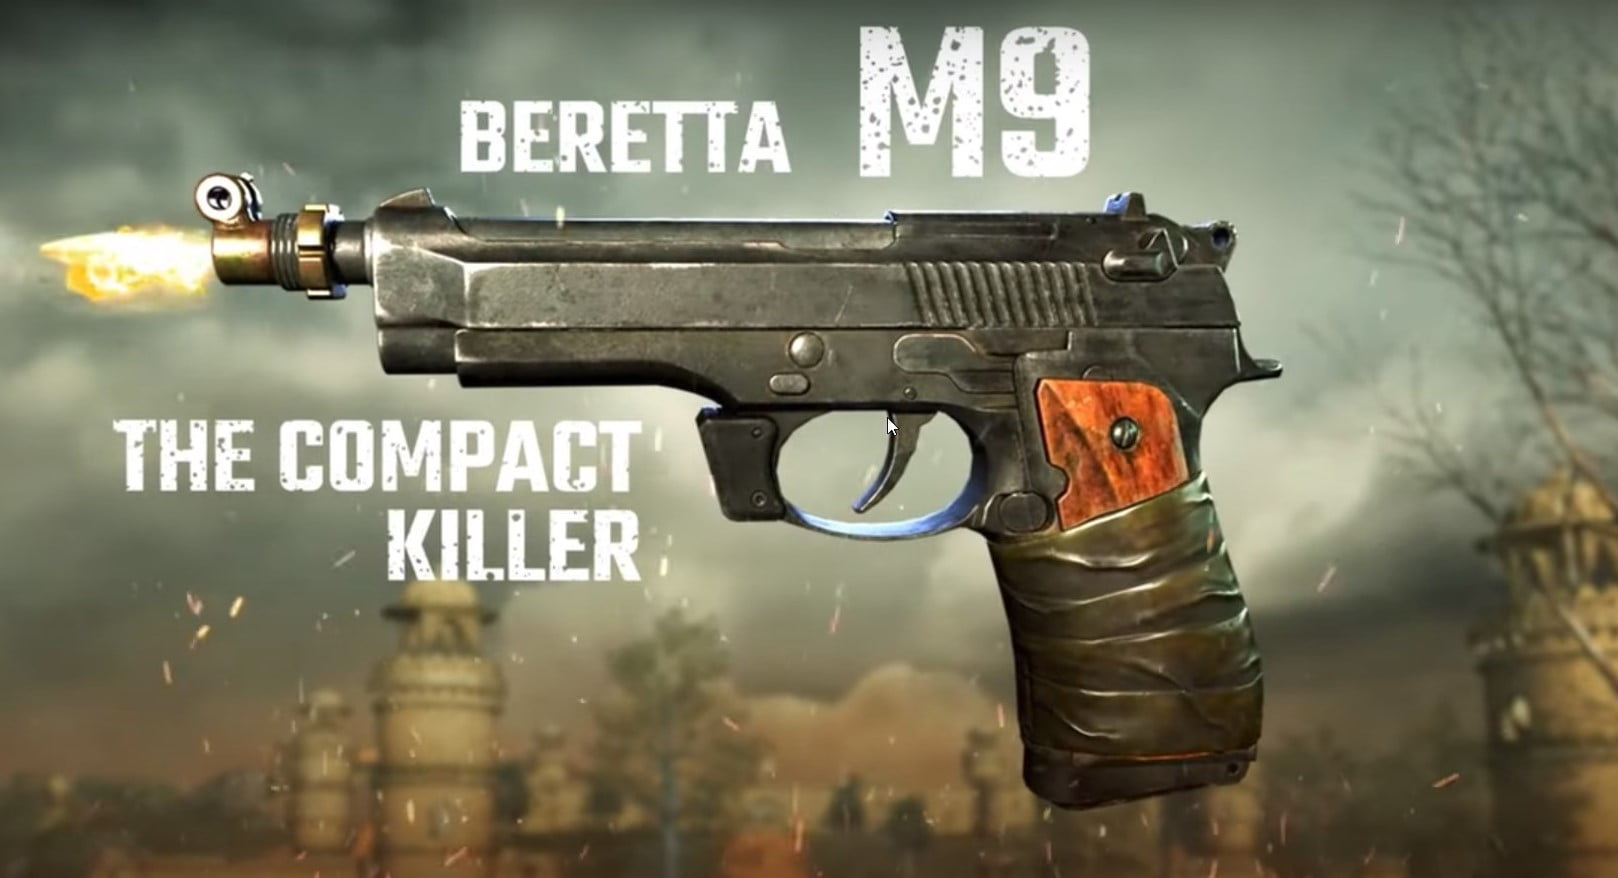 Beretta M9 Gun in underworld gang war